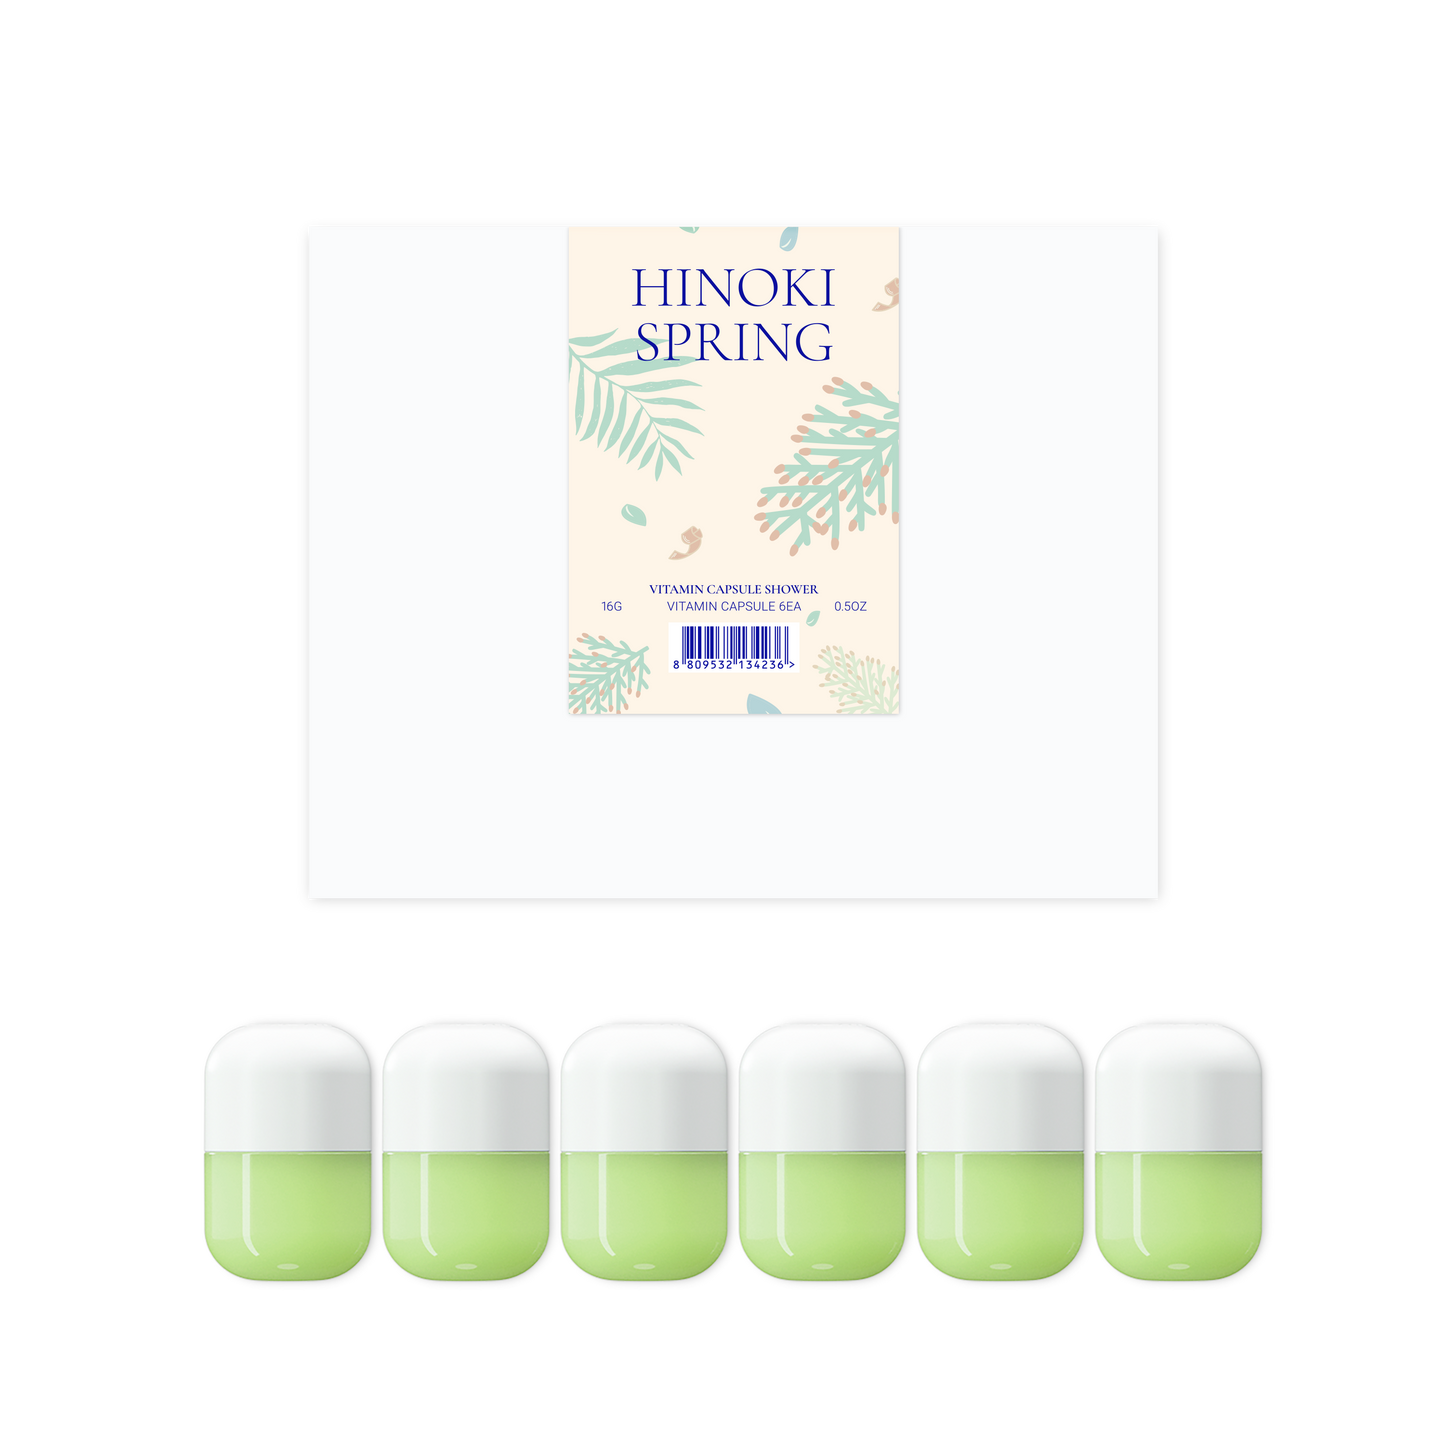 [الإصدار الثاني] 6ea كبسول الفيتامين -  حصرية برائحة ربيع هينوكي